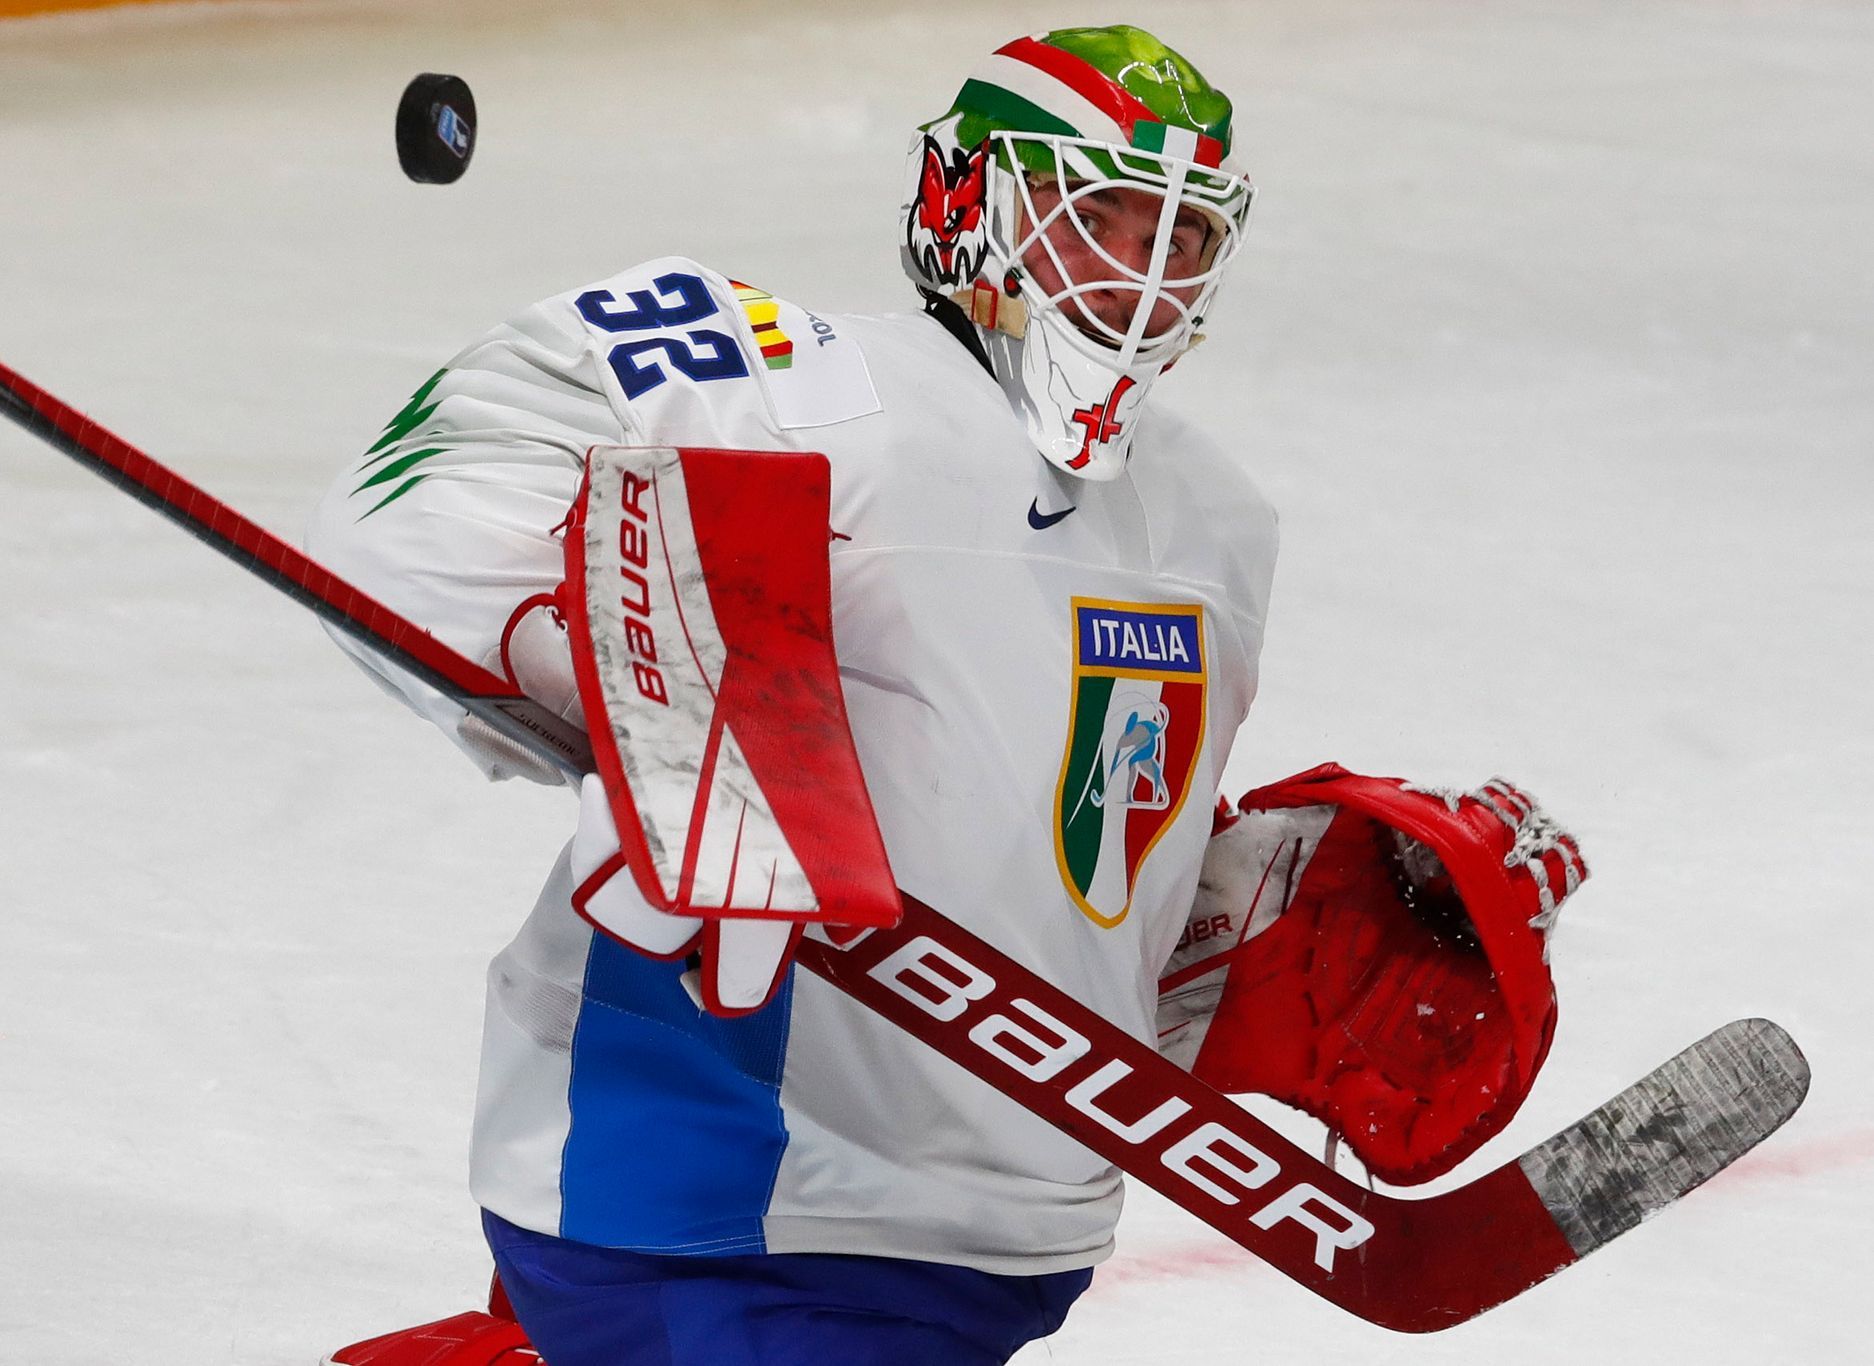 Dopo un inizio assonnato, l’hockey canadese ha battuto l’Italia 6:1 senza problemi